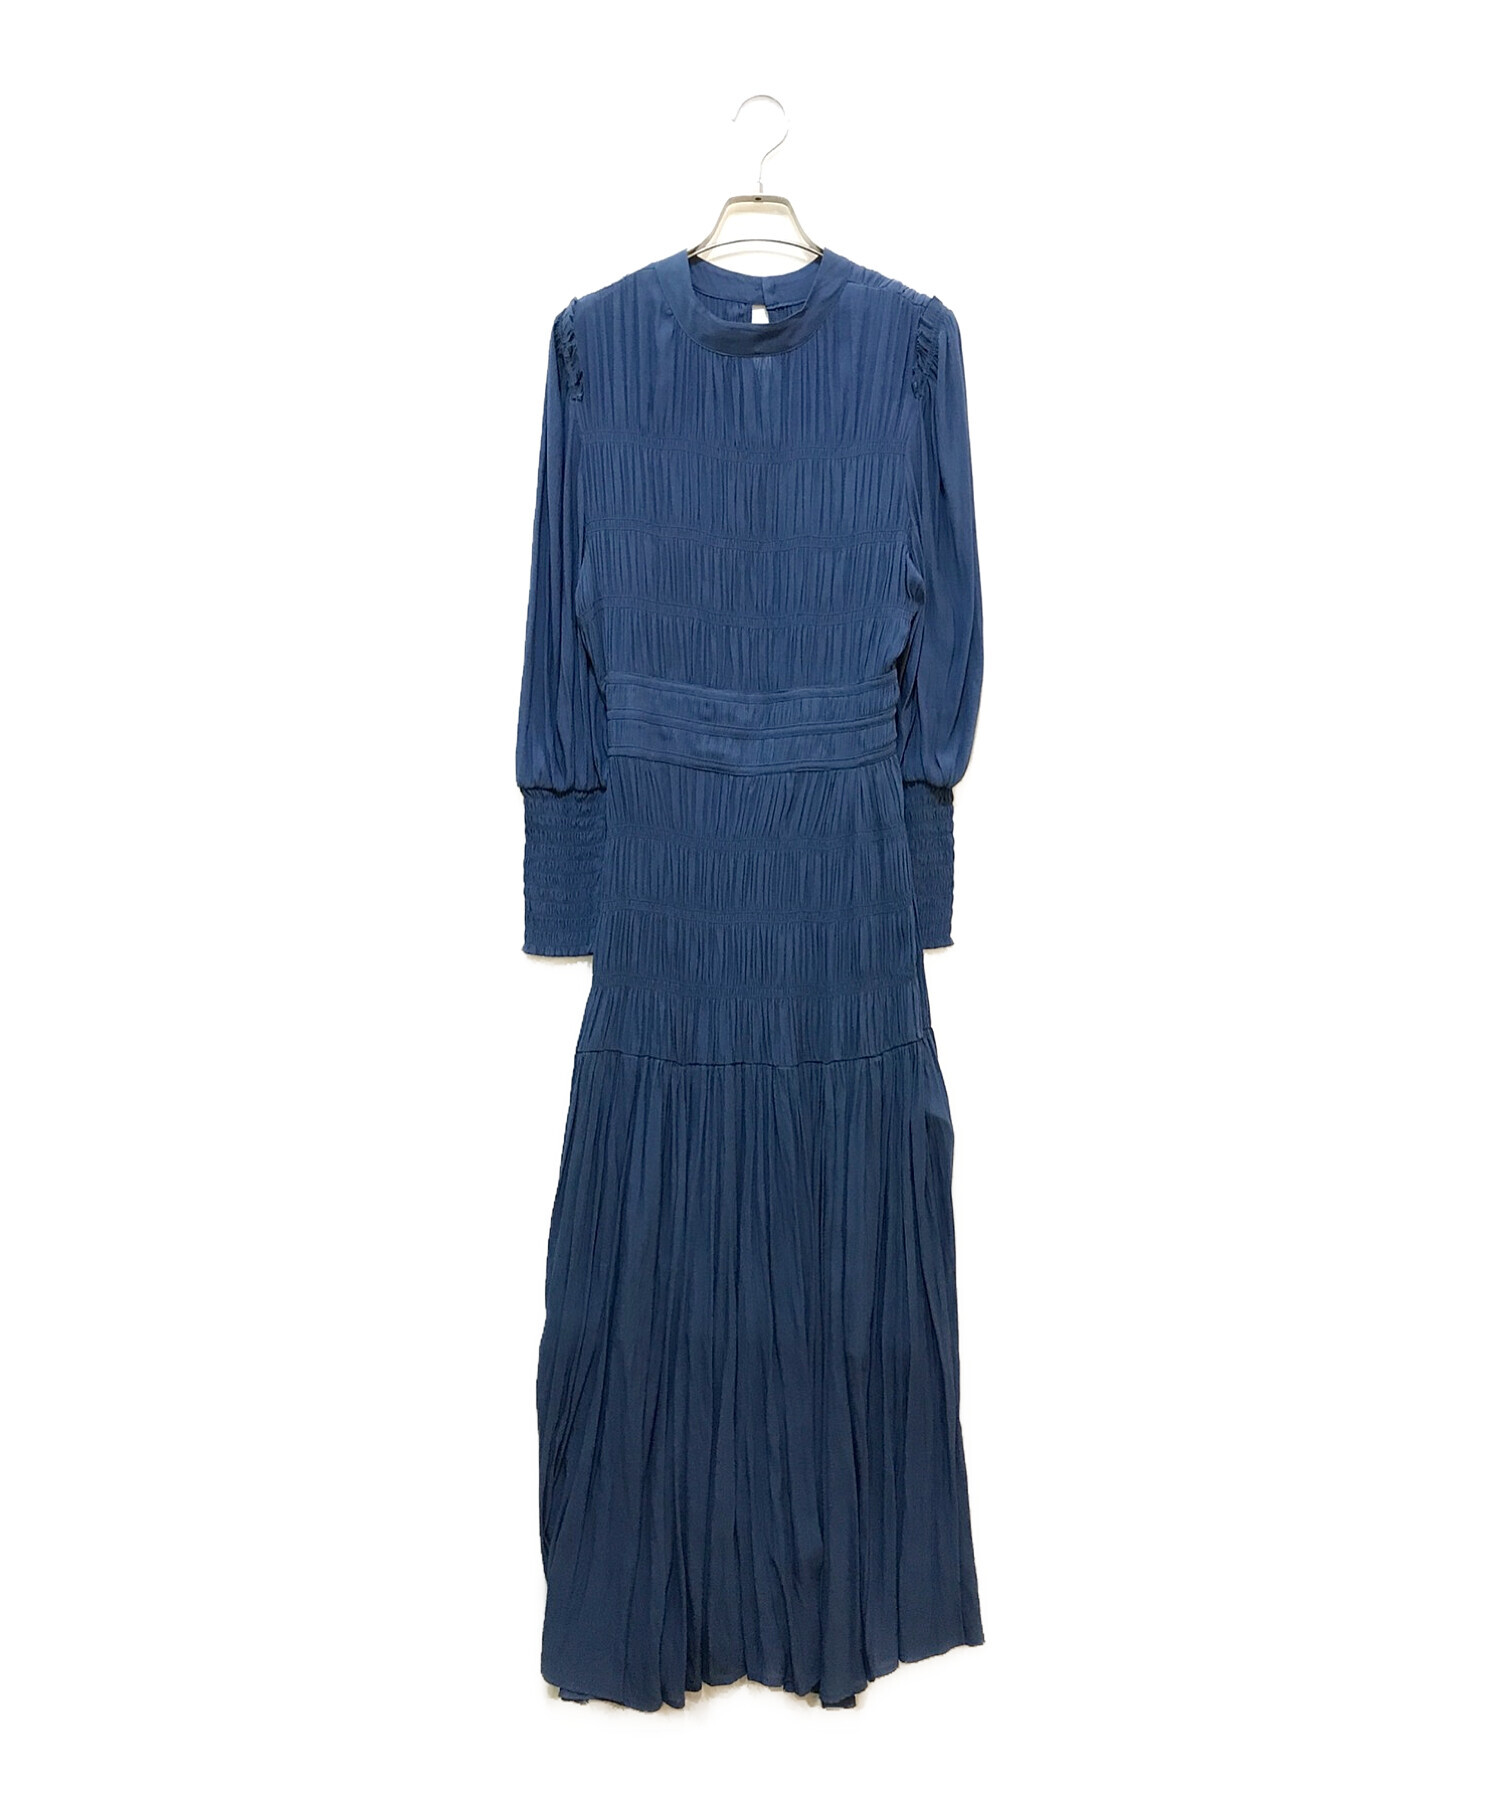 AMERI (アメリ) REFINED SHIRRING DRESS ブルー サイズ:M 未使用品